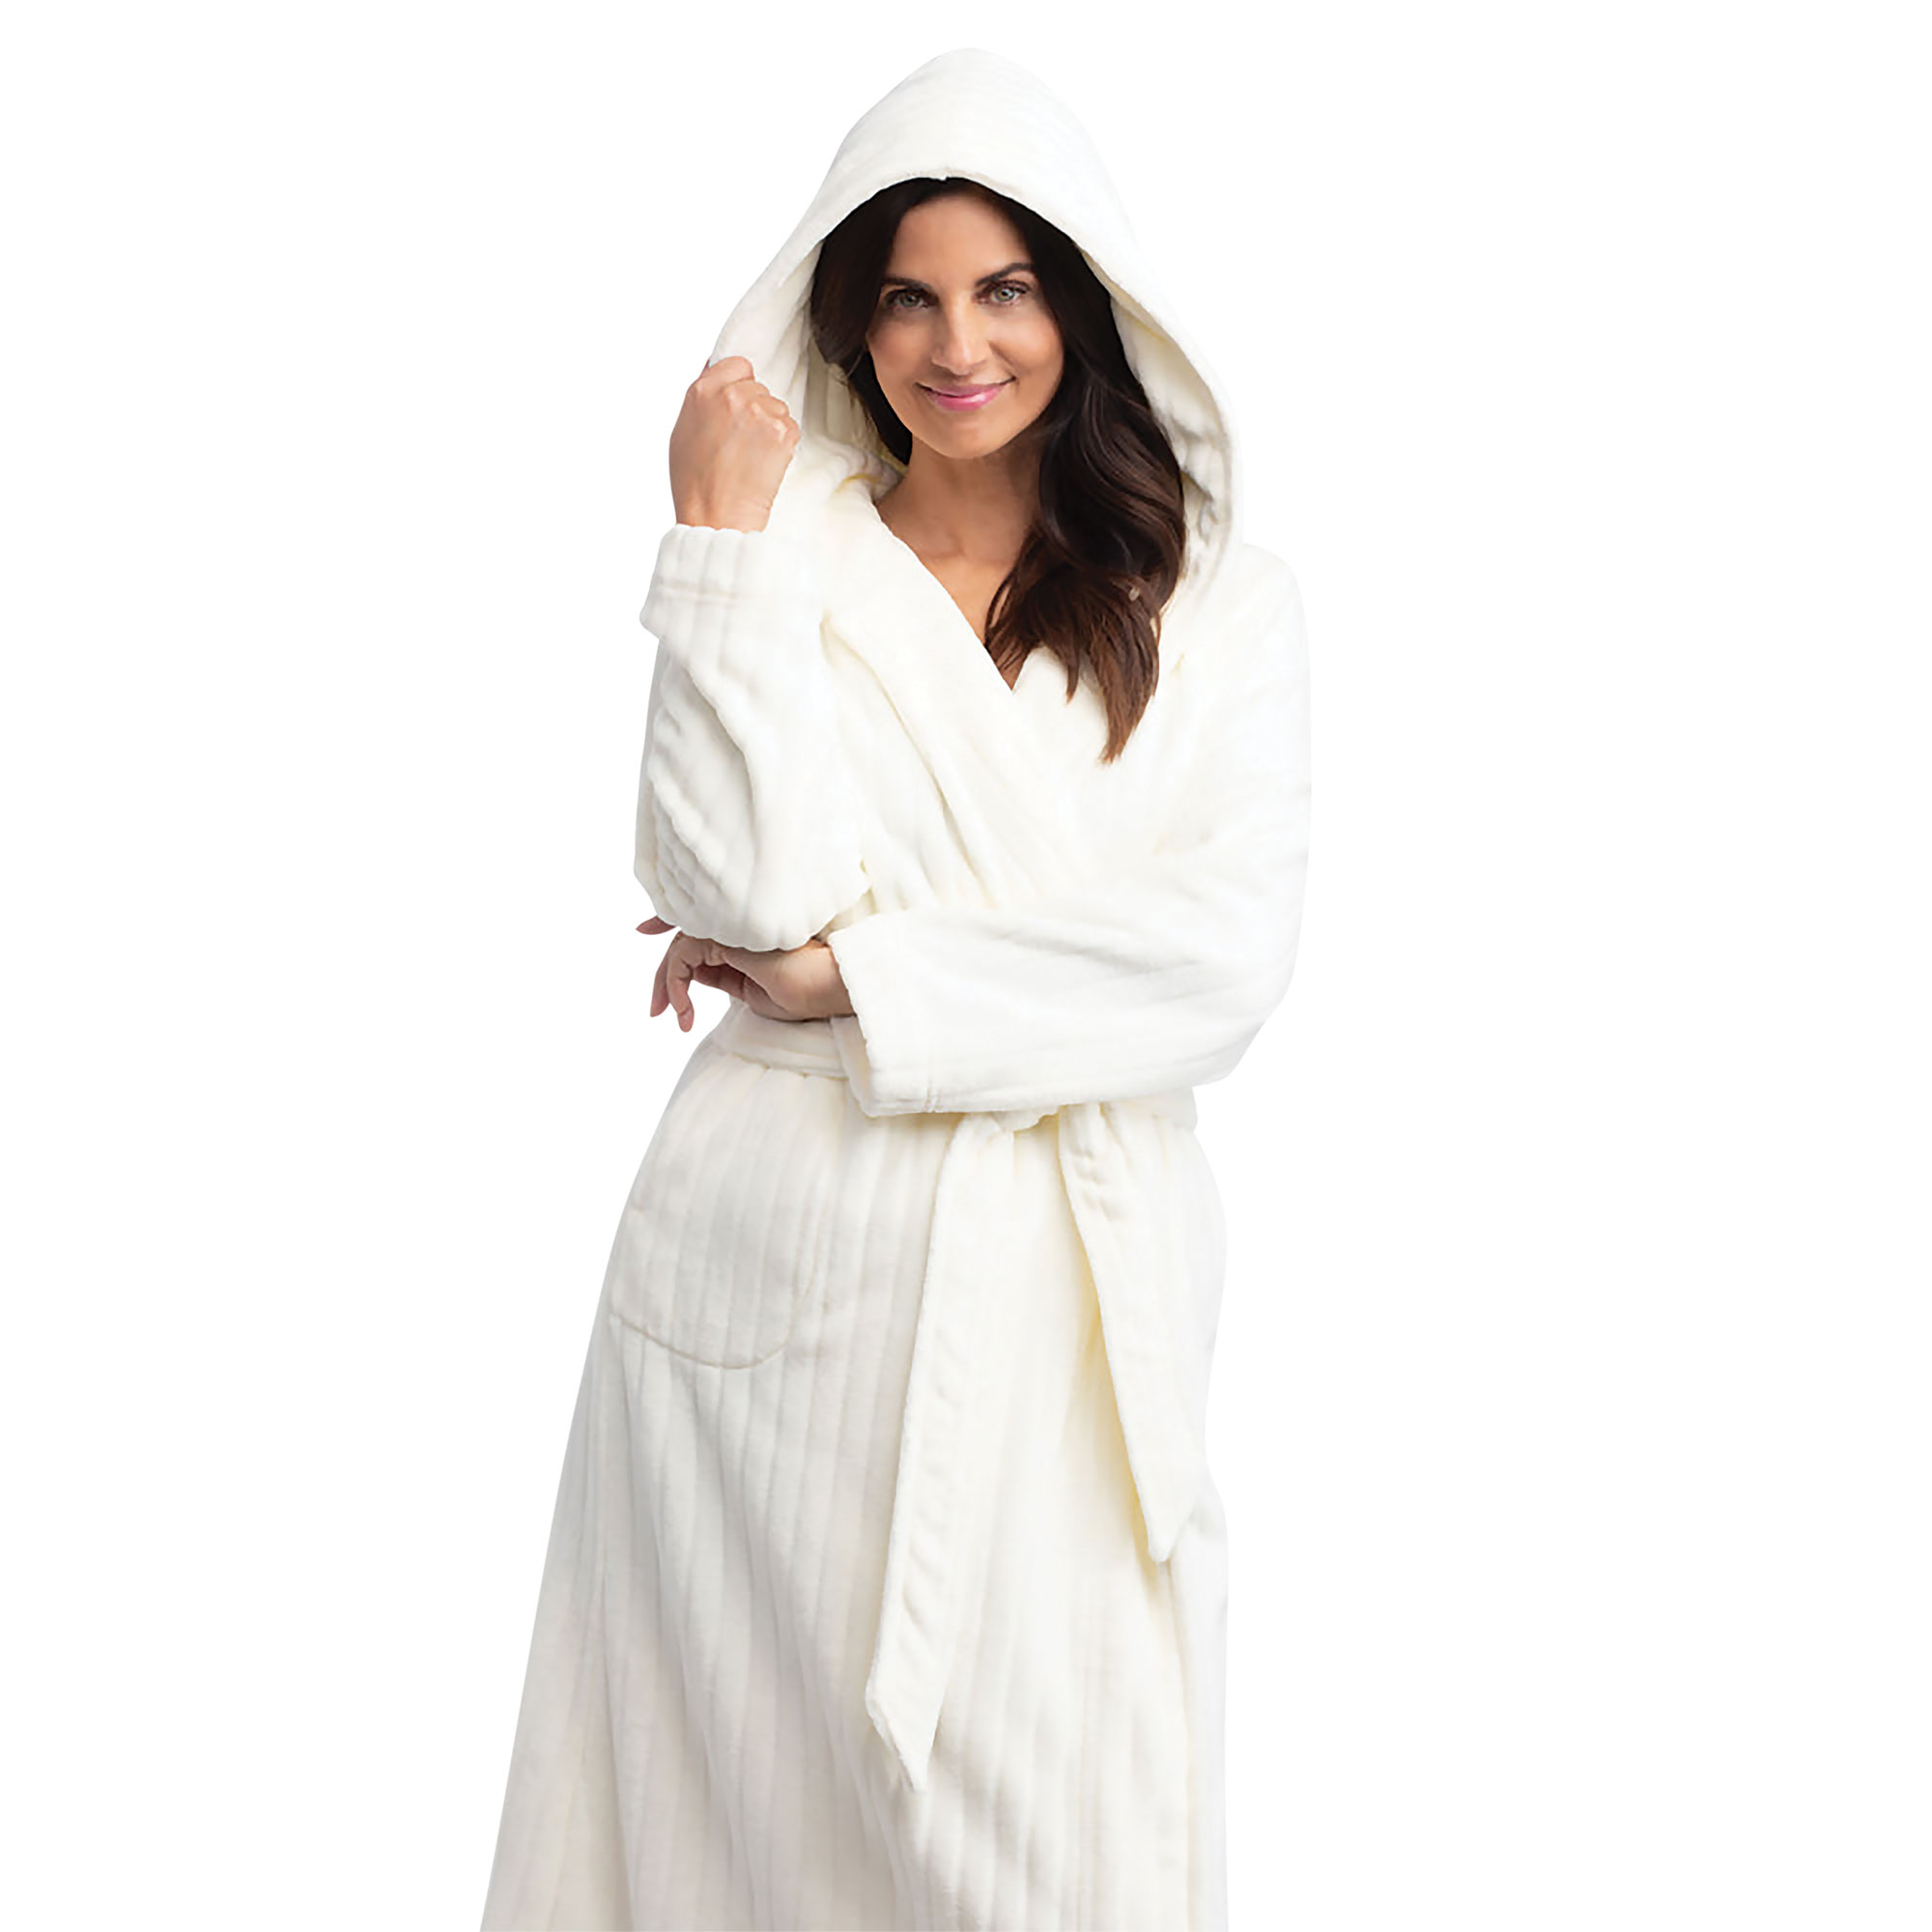 Woman wearing a white robe